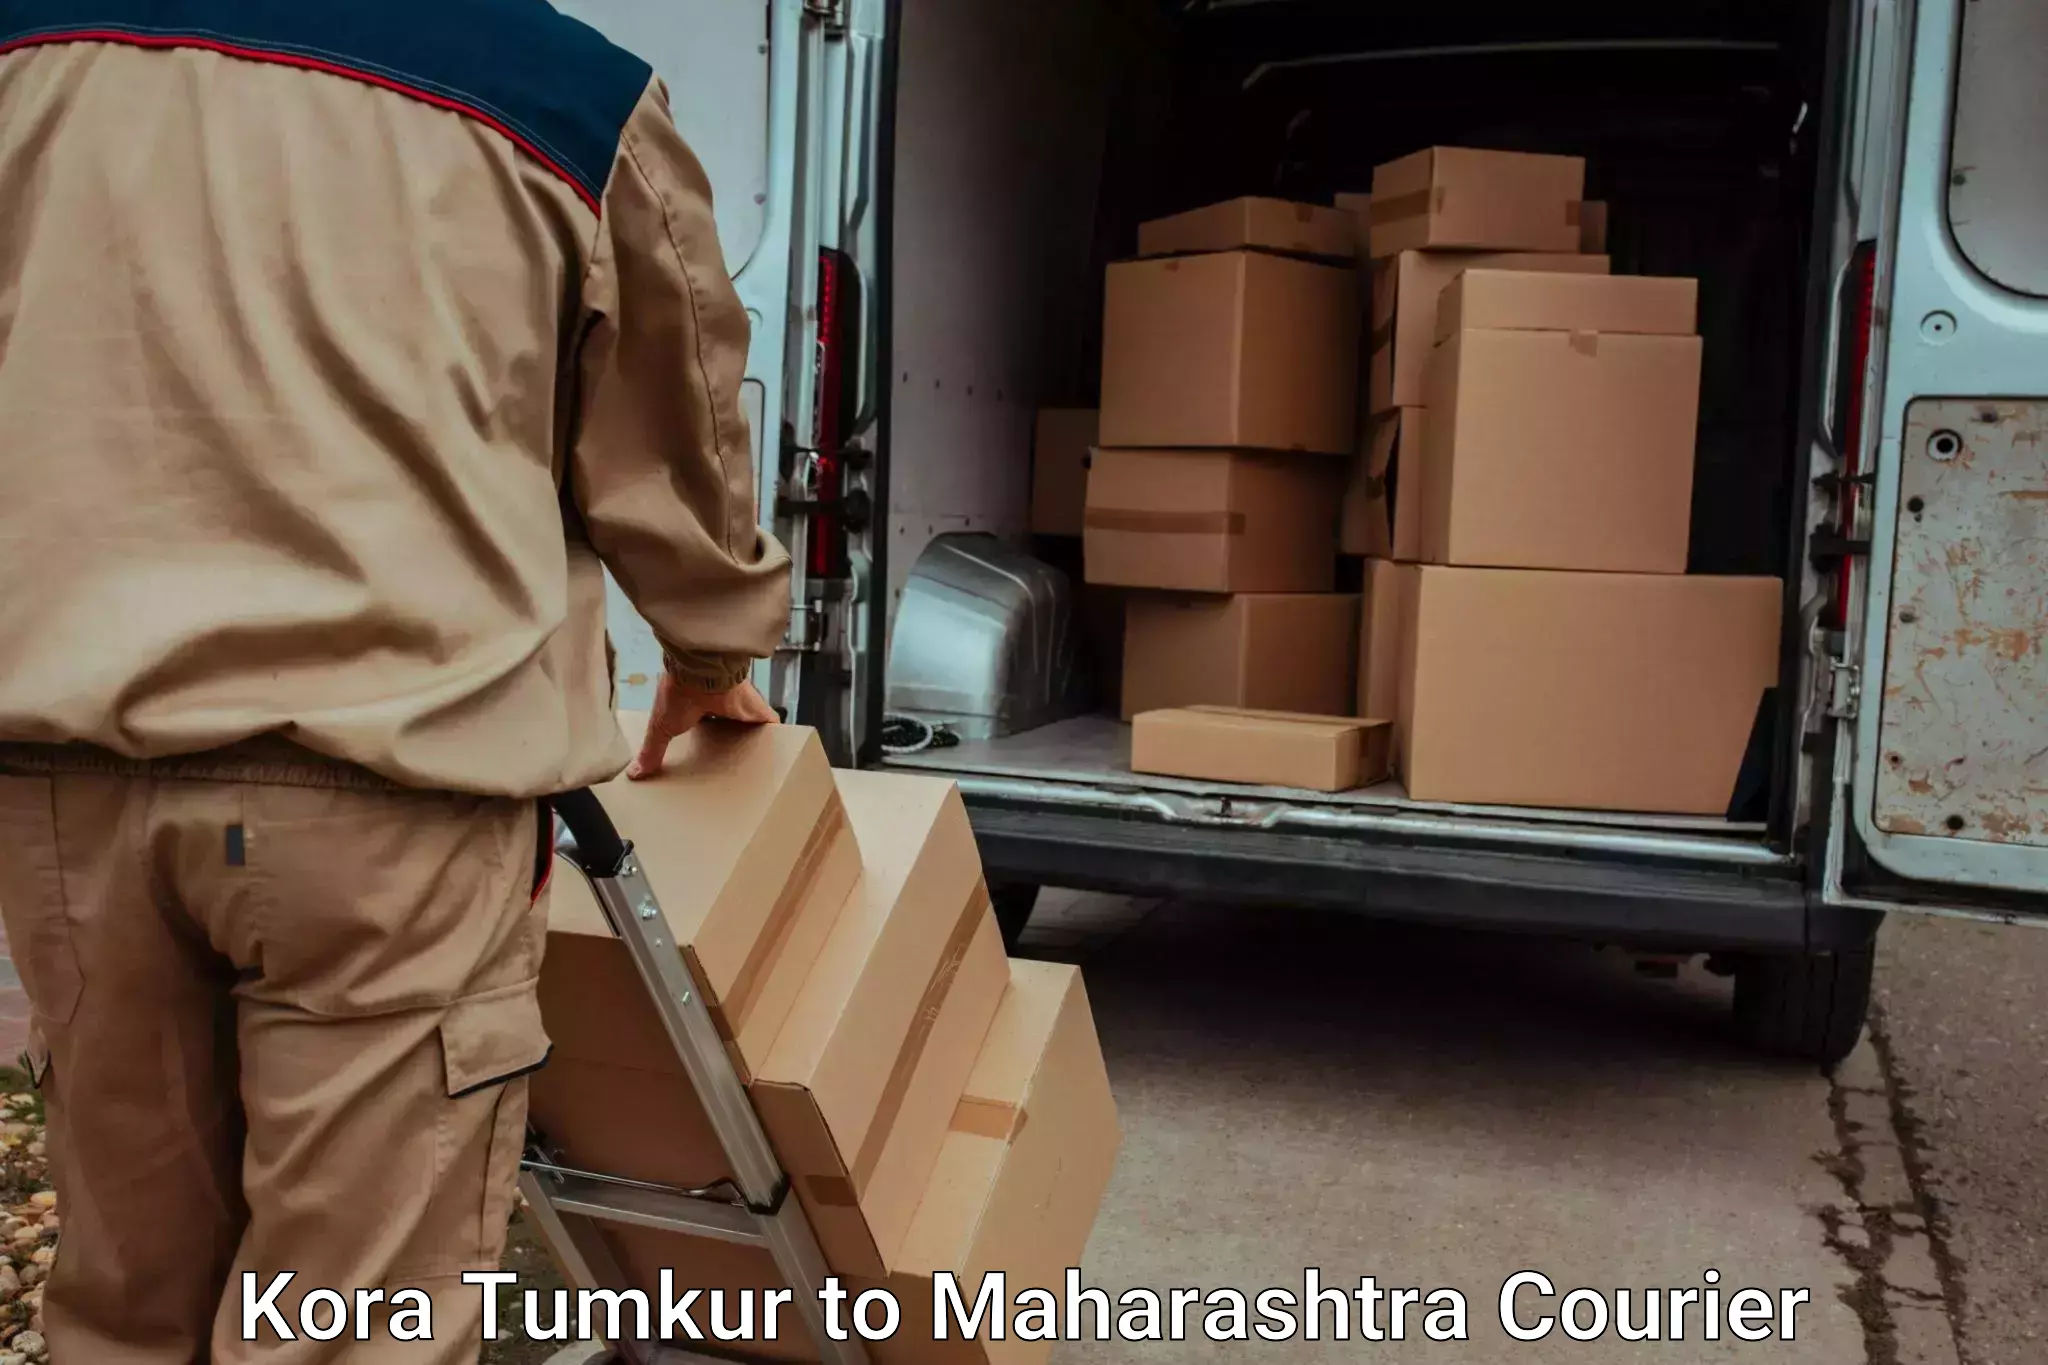 Baggage transport services Kora Tumkur to IIIT Pune